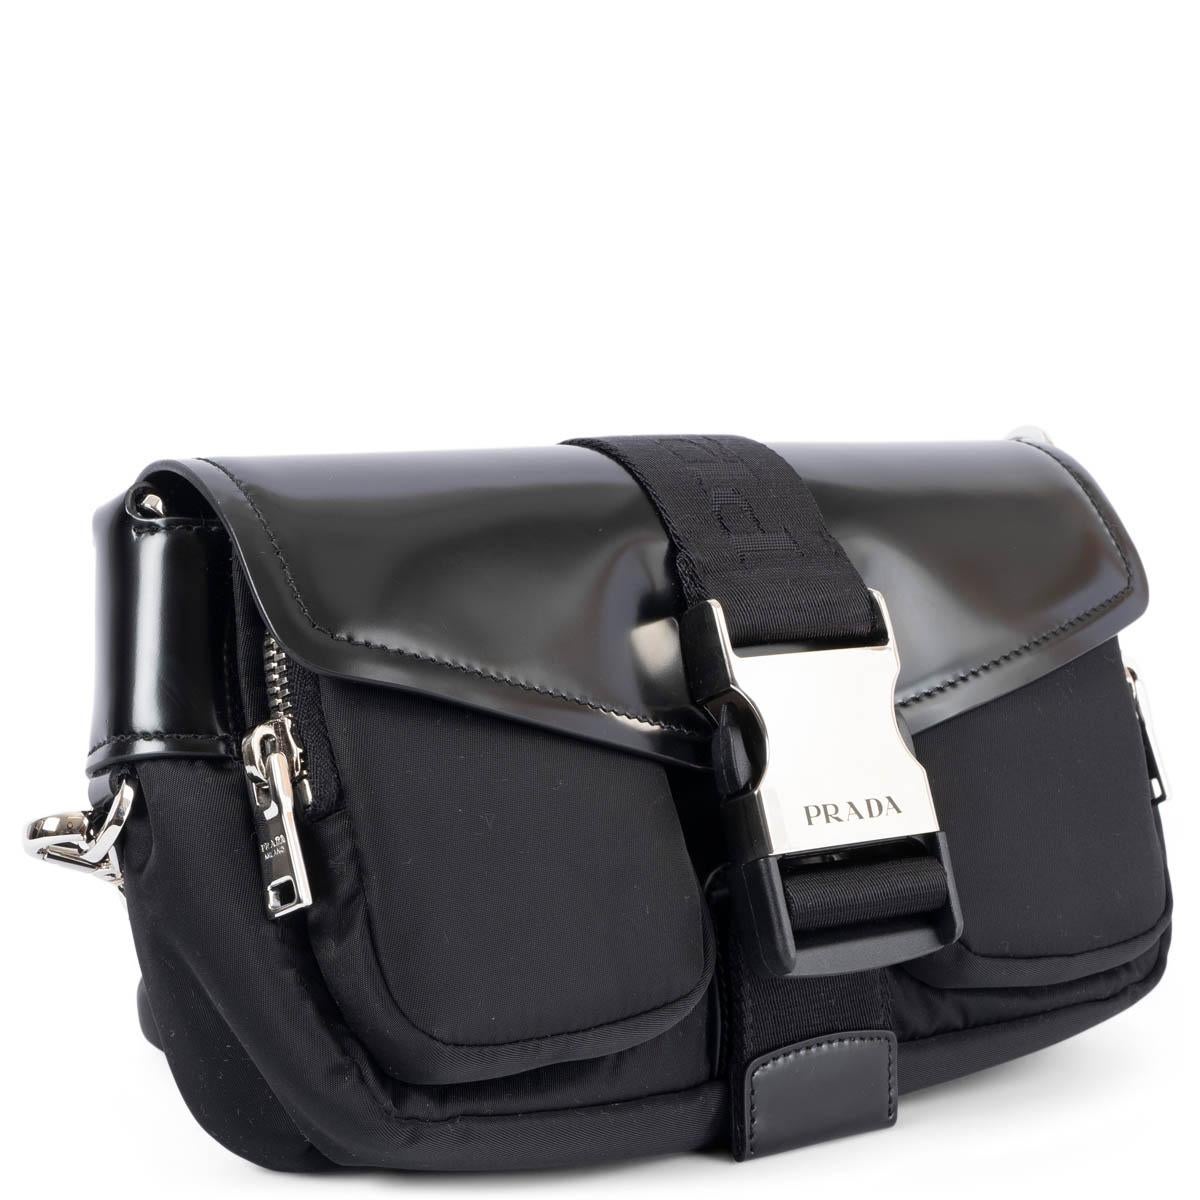 100% authentische Prada Pocket Crossbody Bag aus schwarzem Nylon mit glattem, glänzendem Lederüberschlag. Das Design verfügt über einen abnehmbaren und verstellbaren Schulterriemen mit einer abnehmbaren Reißverschlusstasche, einen silberfarbenen